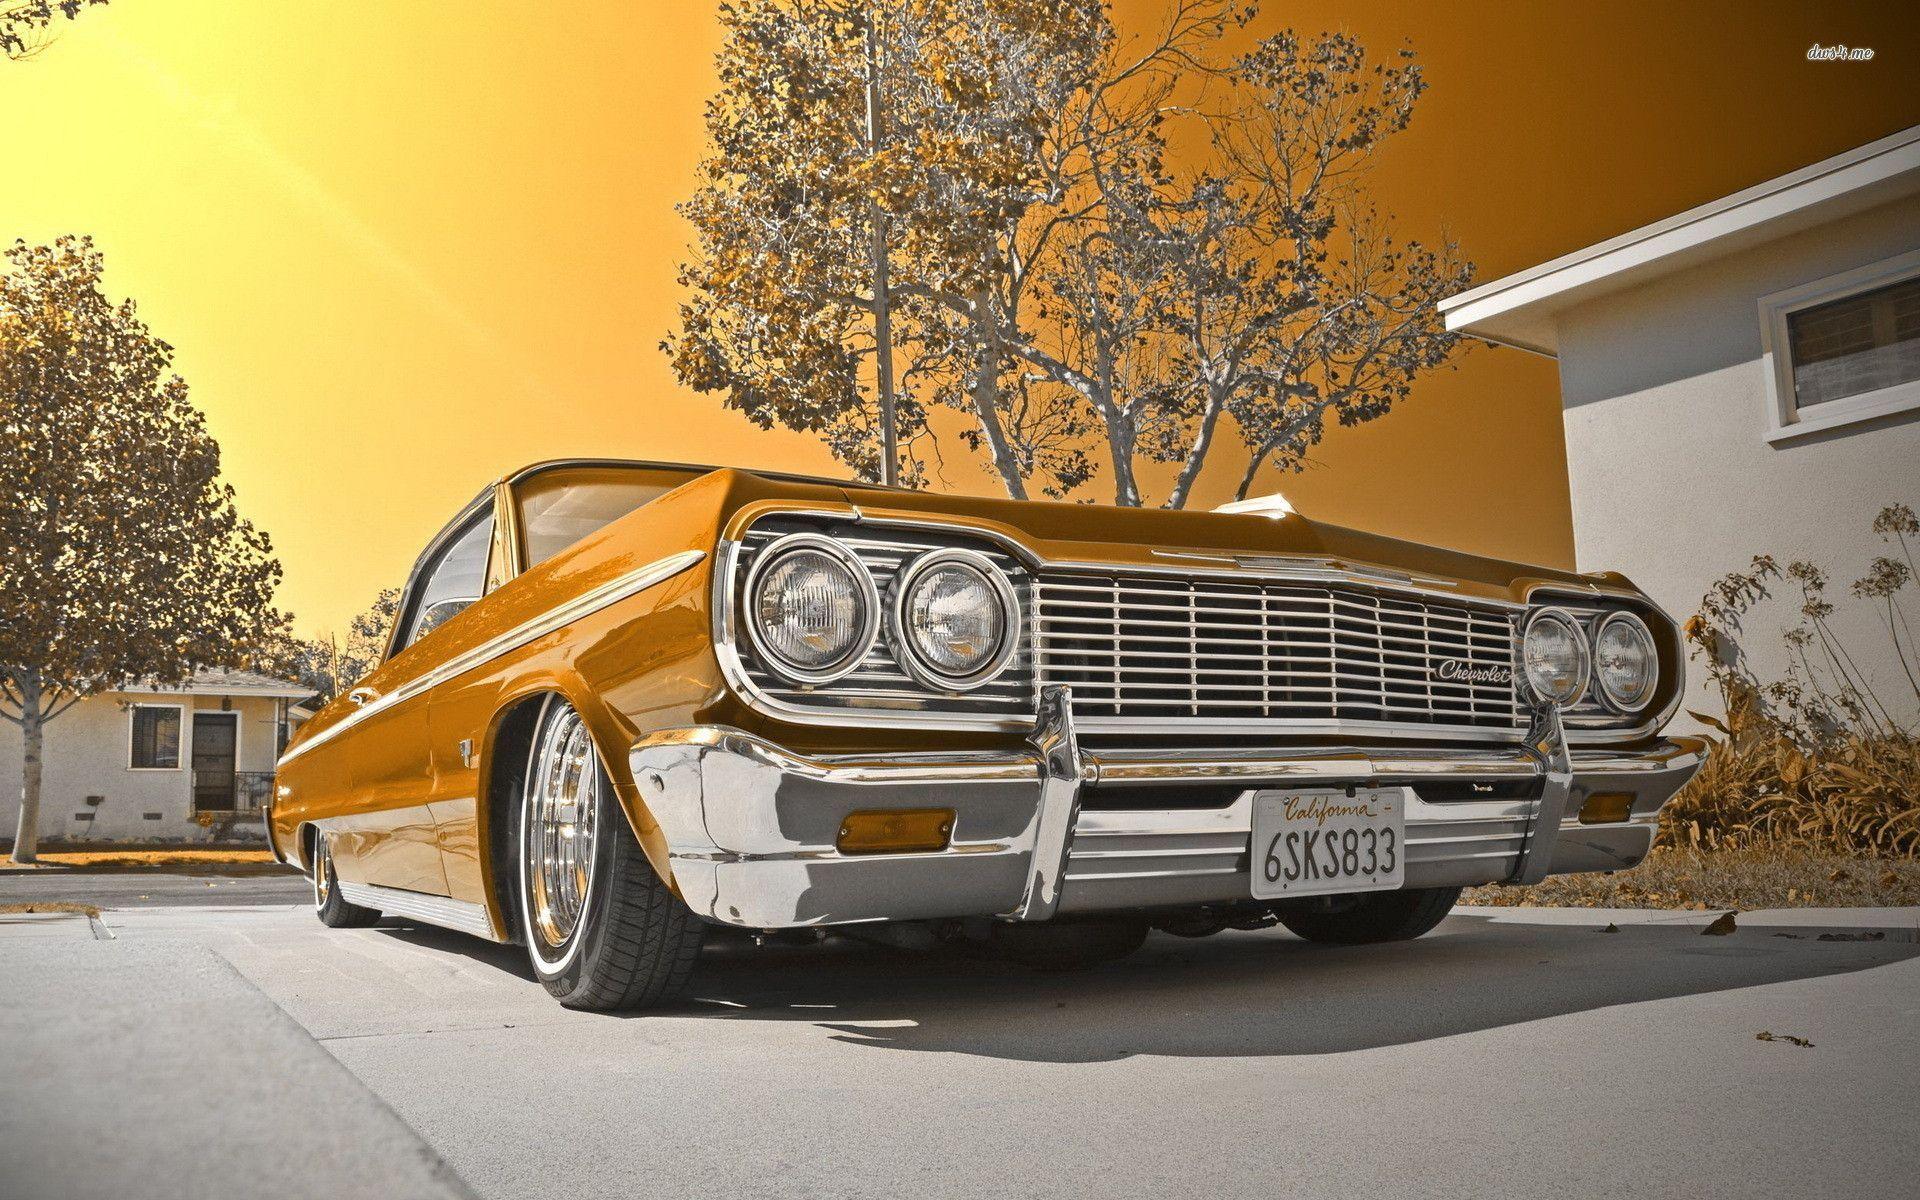 Chevrolet Impala Wallpaper HD wallpaper search